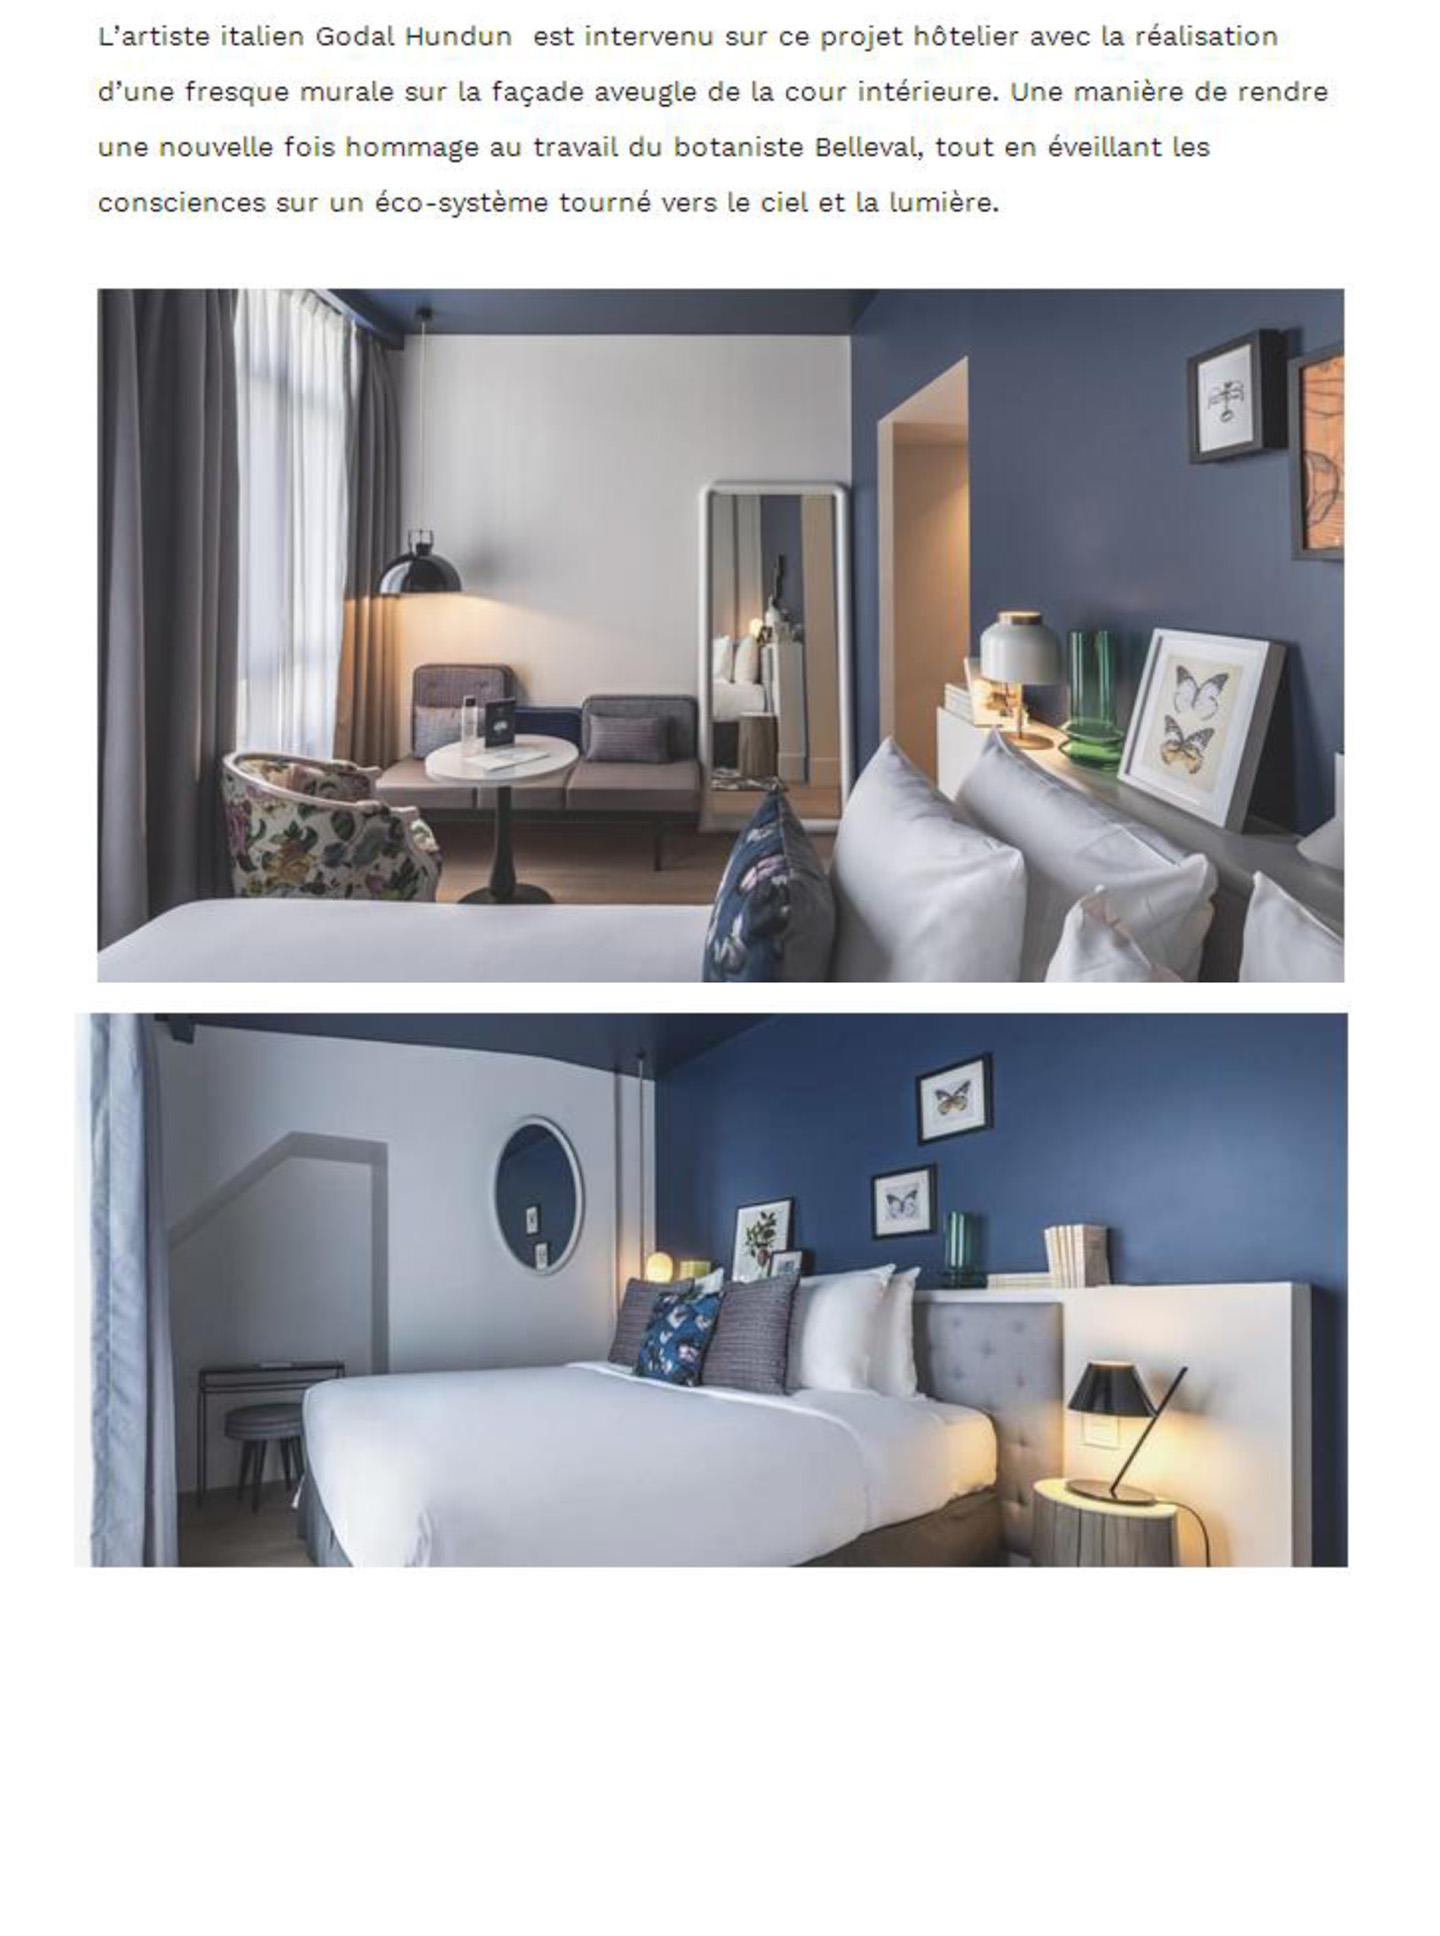 Article sur Le Belleval réalisé par le studio jean-Philippe Nuel dans le magazine Intramuros, nouvel hotel de luxe, lifestyle, architecture d'intérieur de luxe, hotel parisien